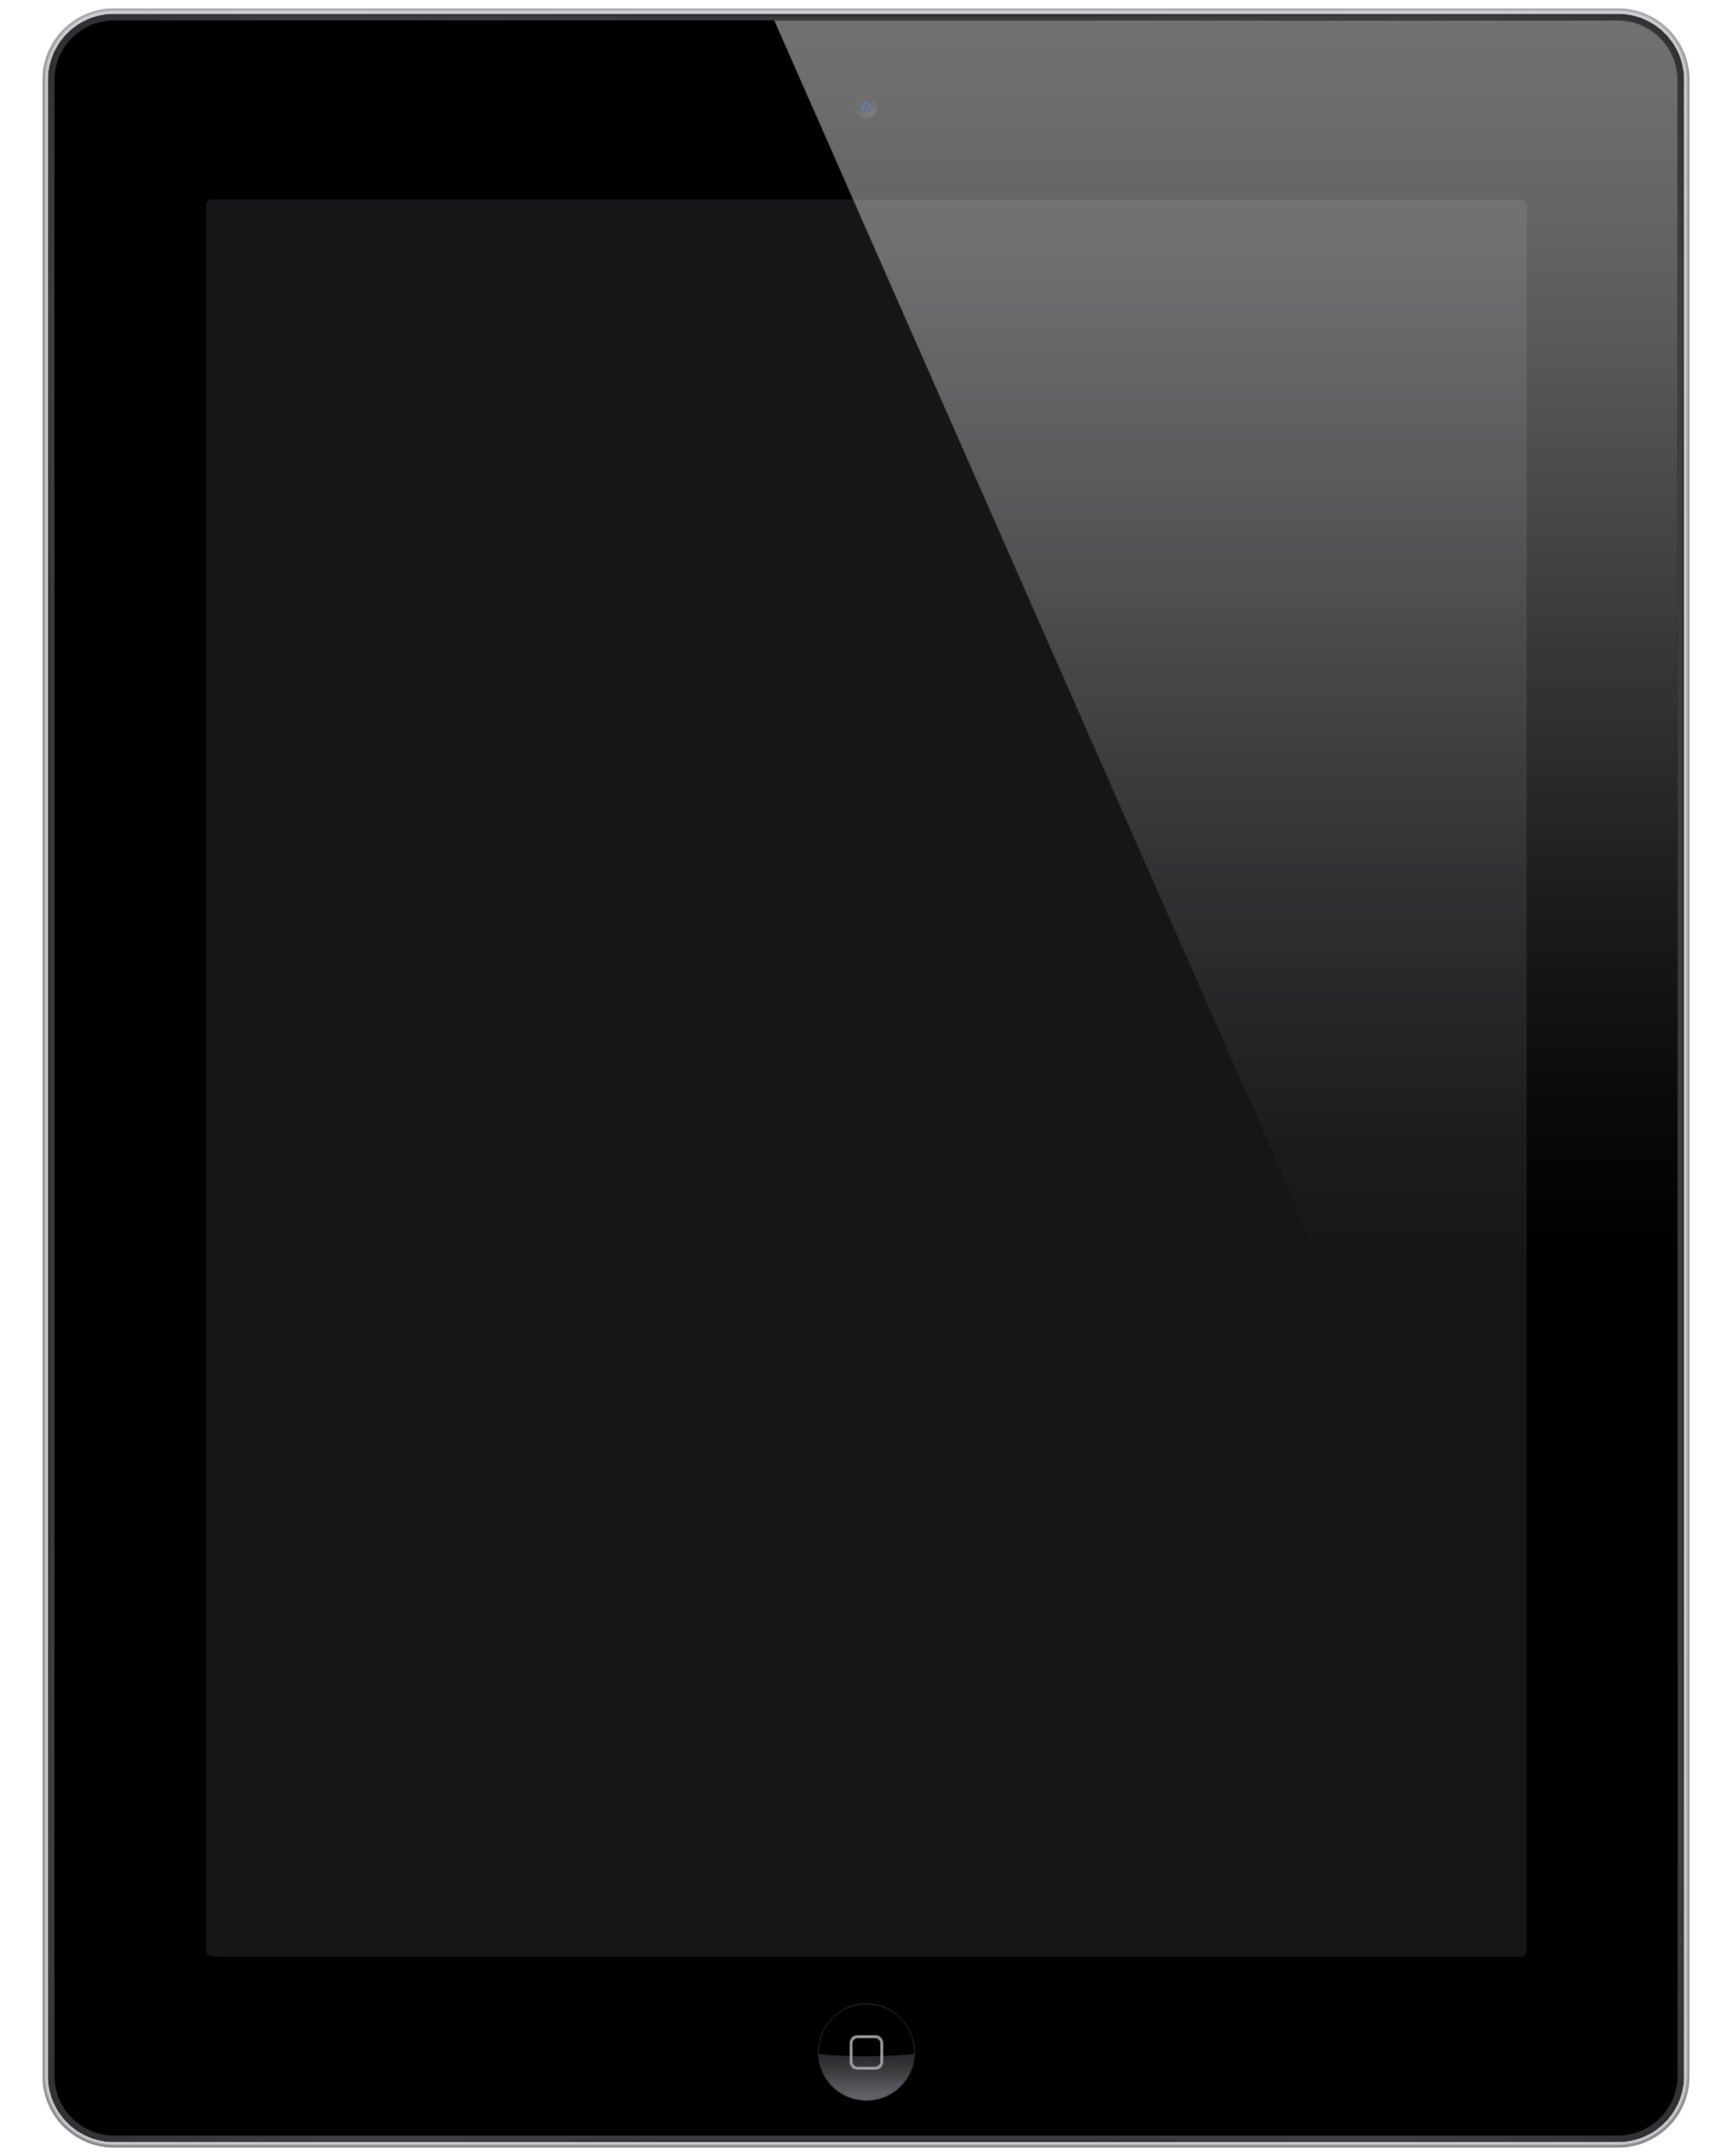 iPad PNG Transparent Image